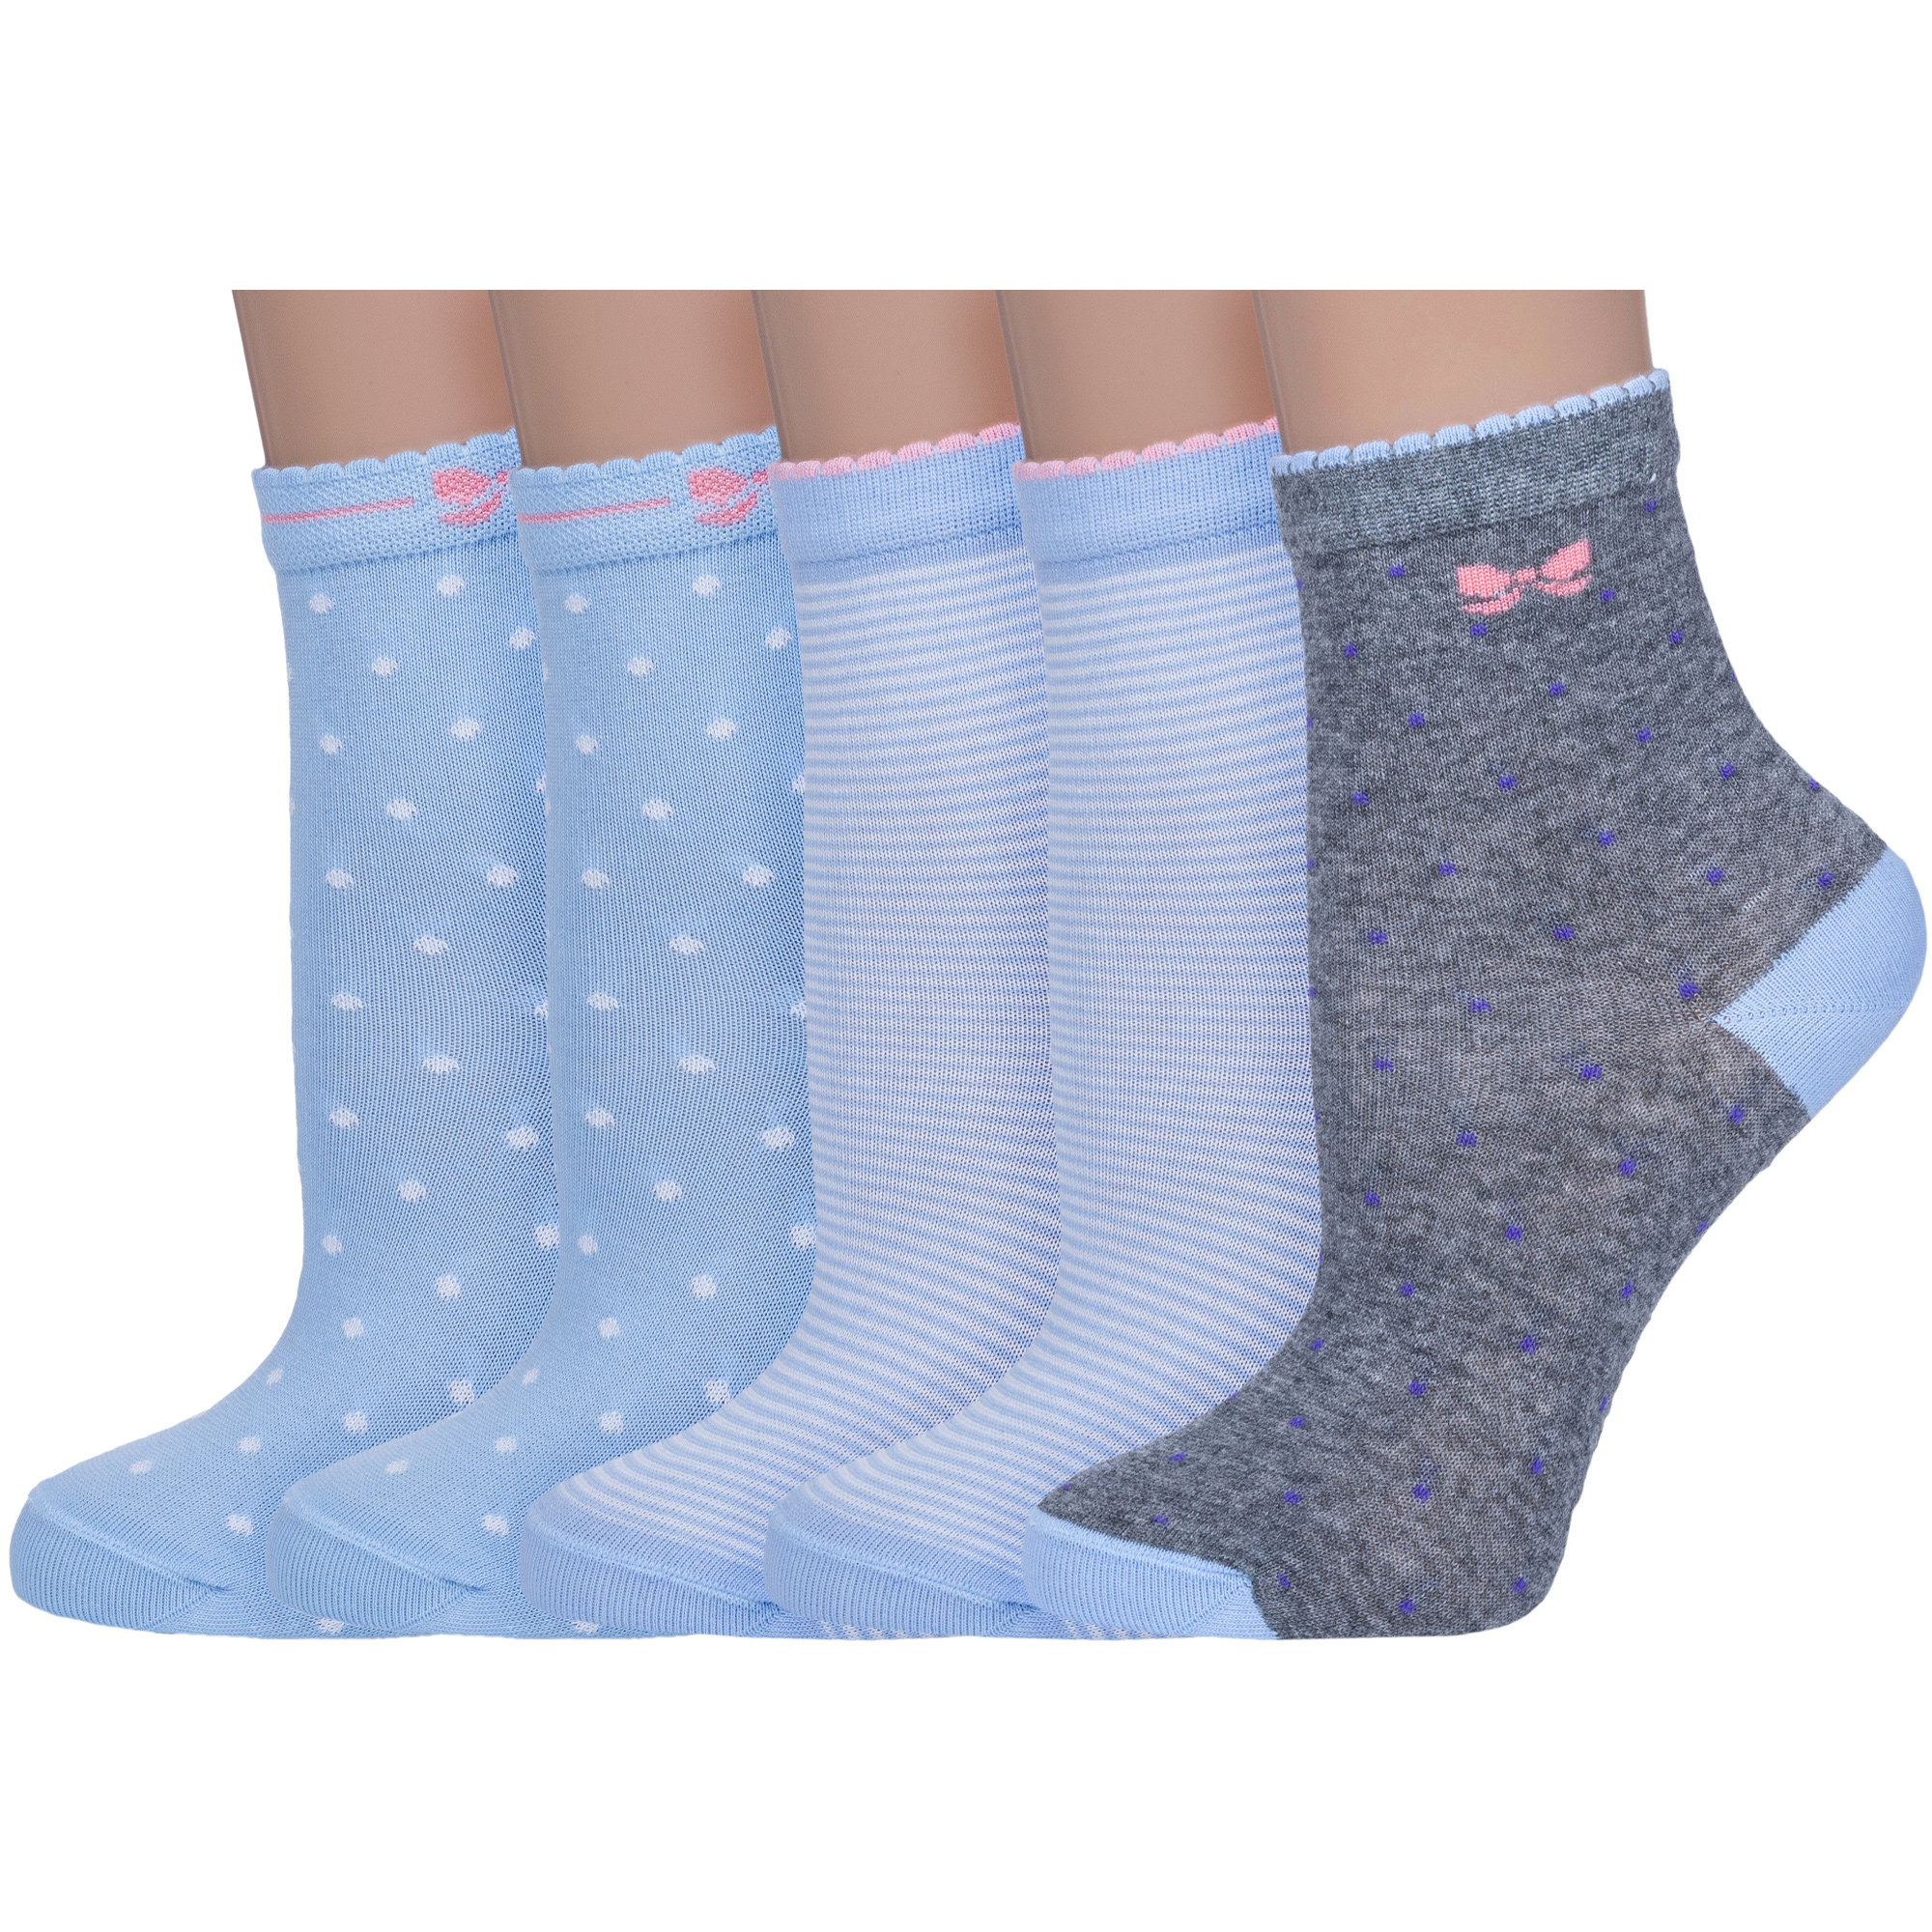 Носки детские LorenzLine 5-Л105, микс 6, 6-8 носки для девочек lorenzline л105 10 цв голубой розовый серый белый р 44905